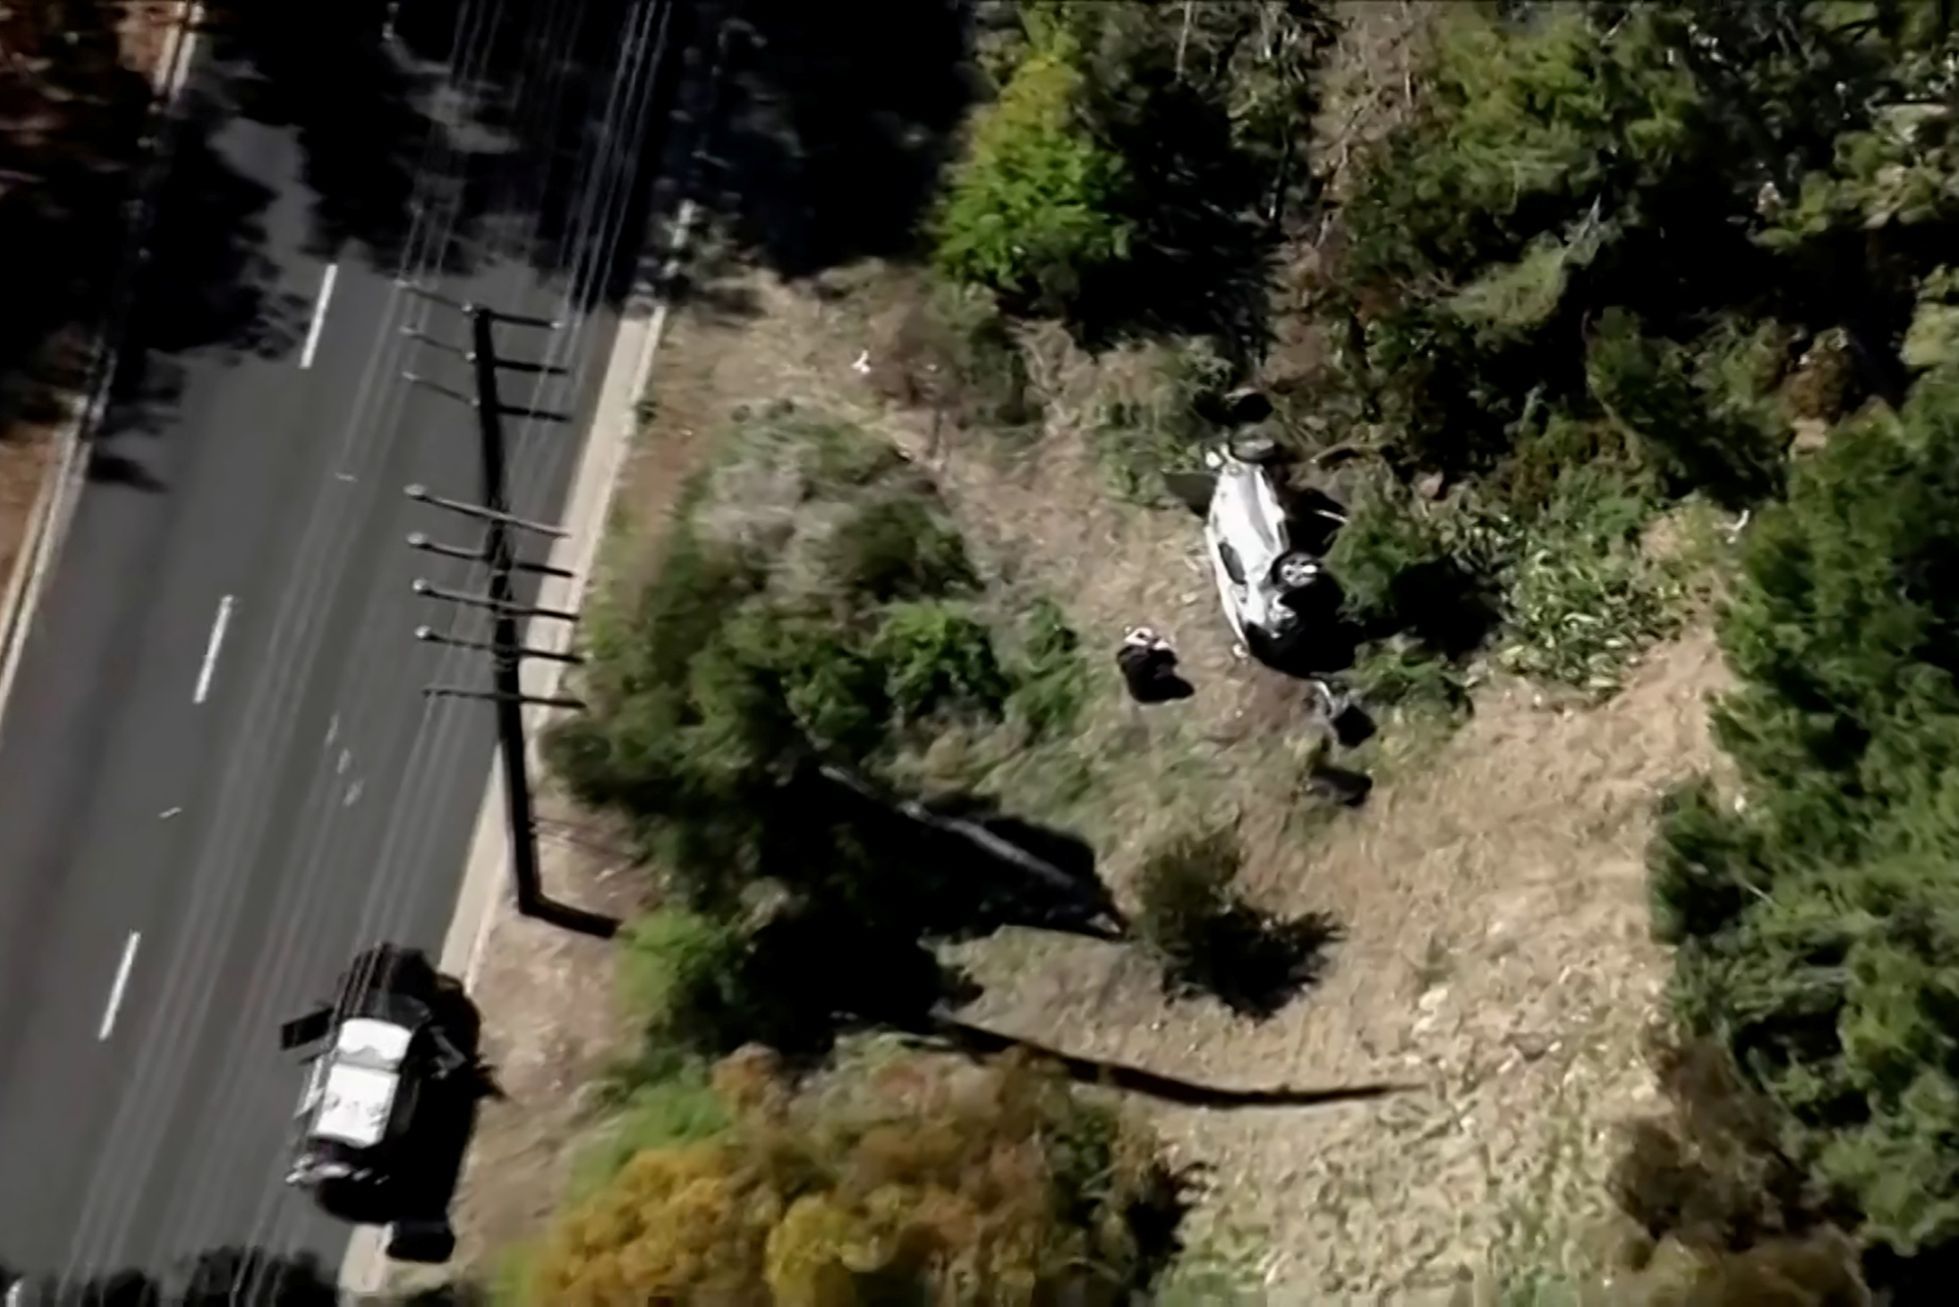 Zničené auto Tigera Woodse po havárii v Los Angeles